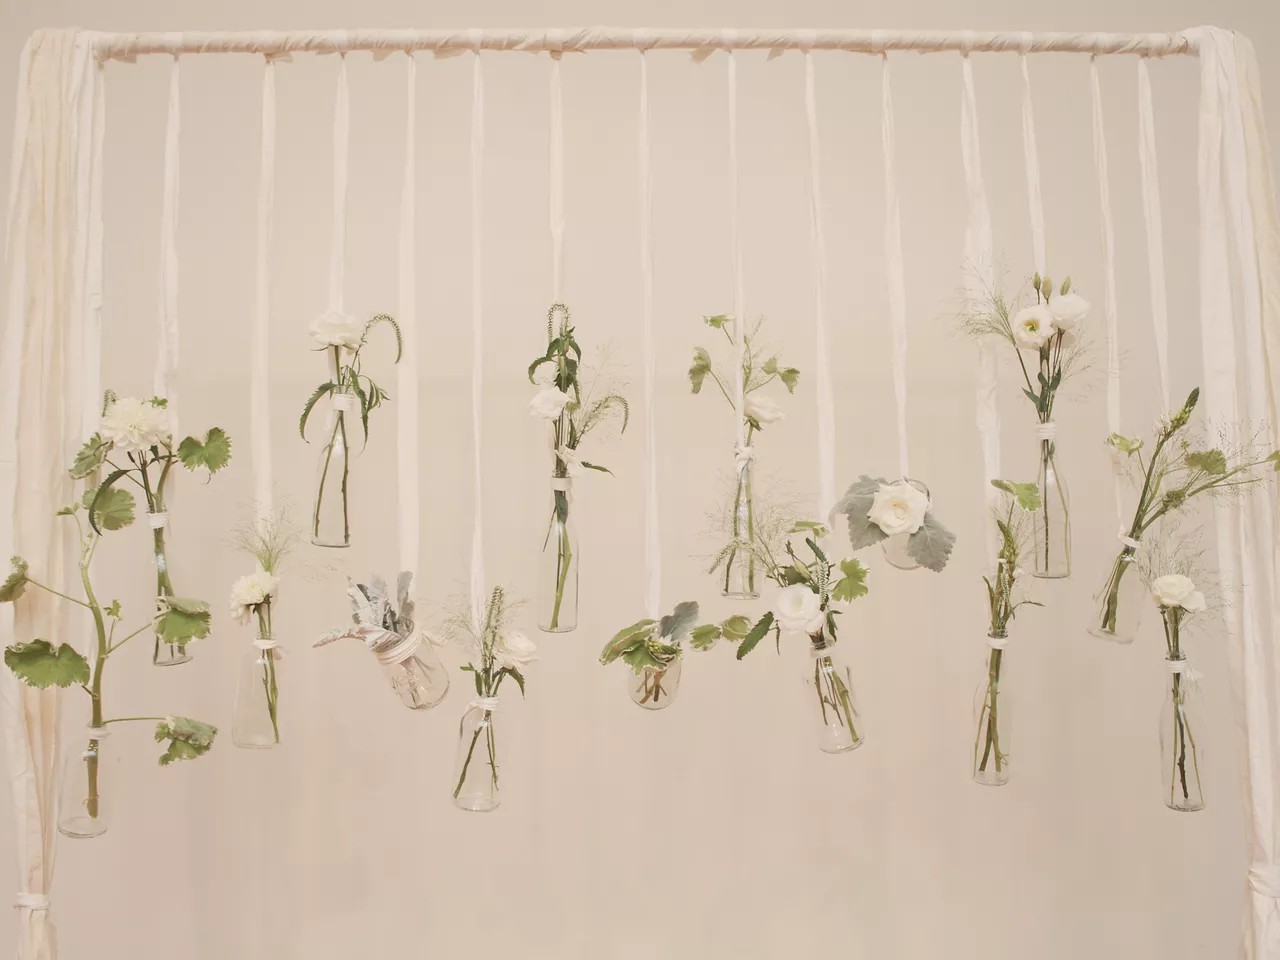 26 Awesome Wedding Flower Idea: Amazing Ways To Use Wedding Flowers For Wedding